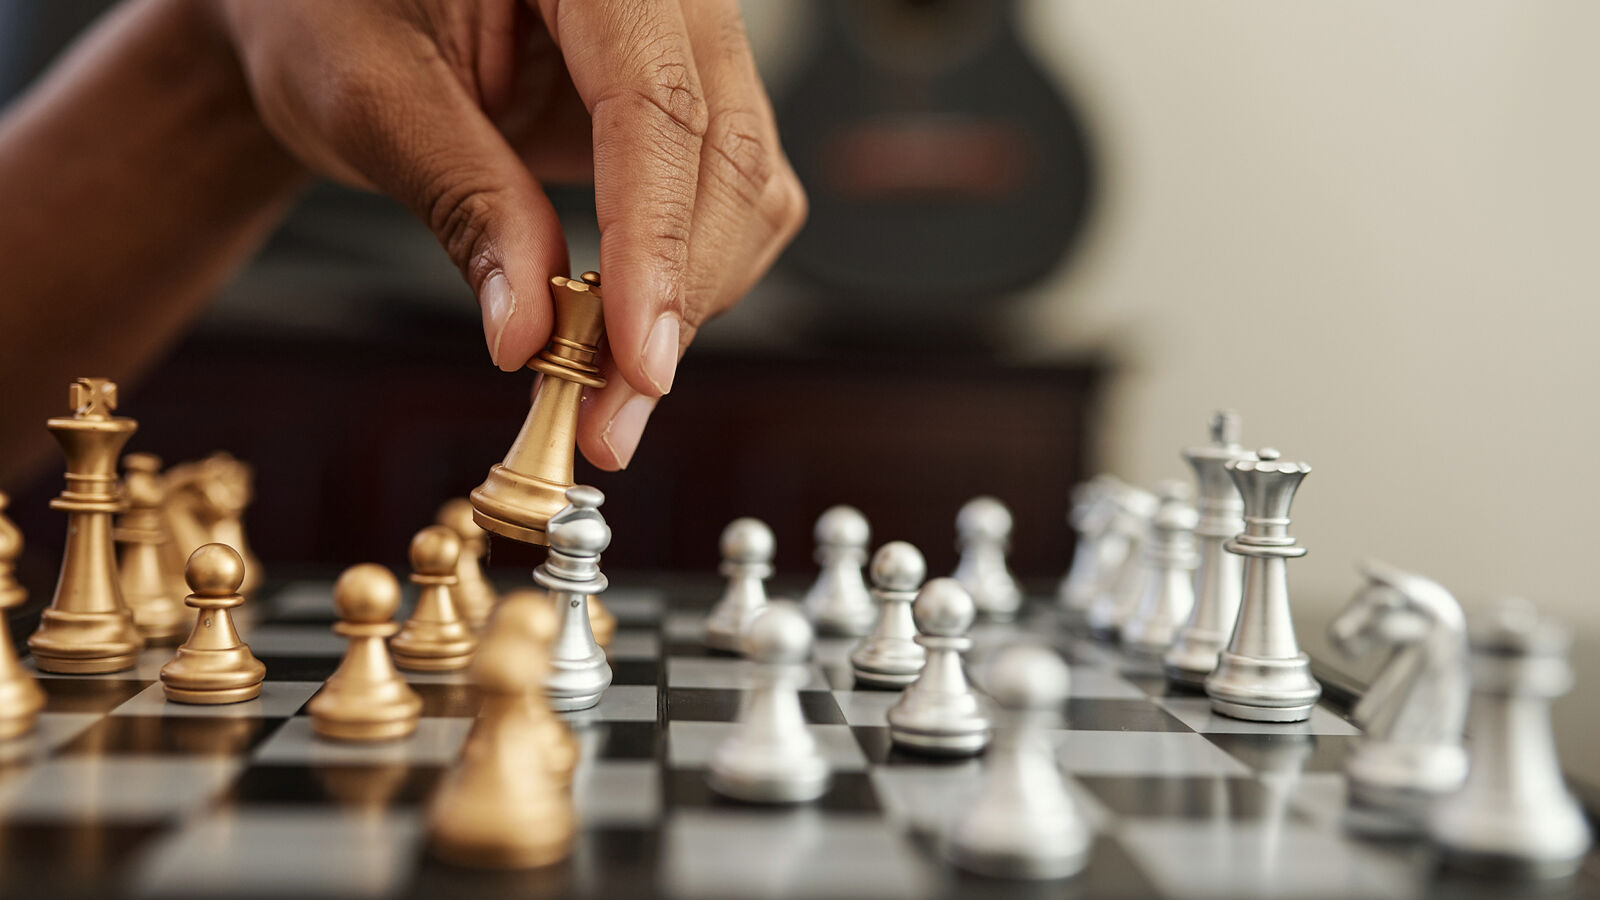 国际象棋是一种经典的策略性游戏